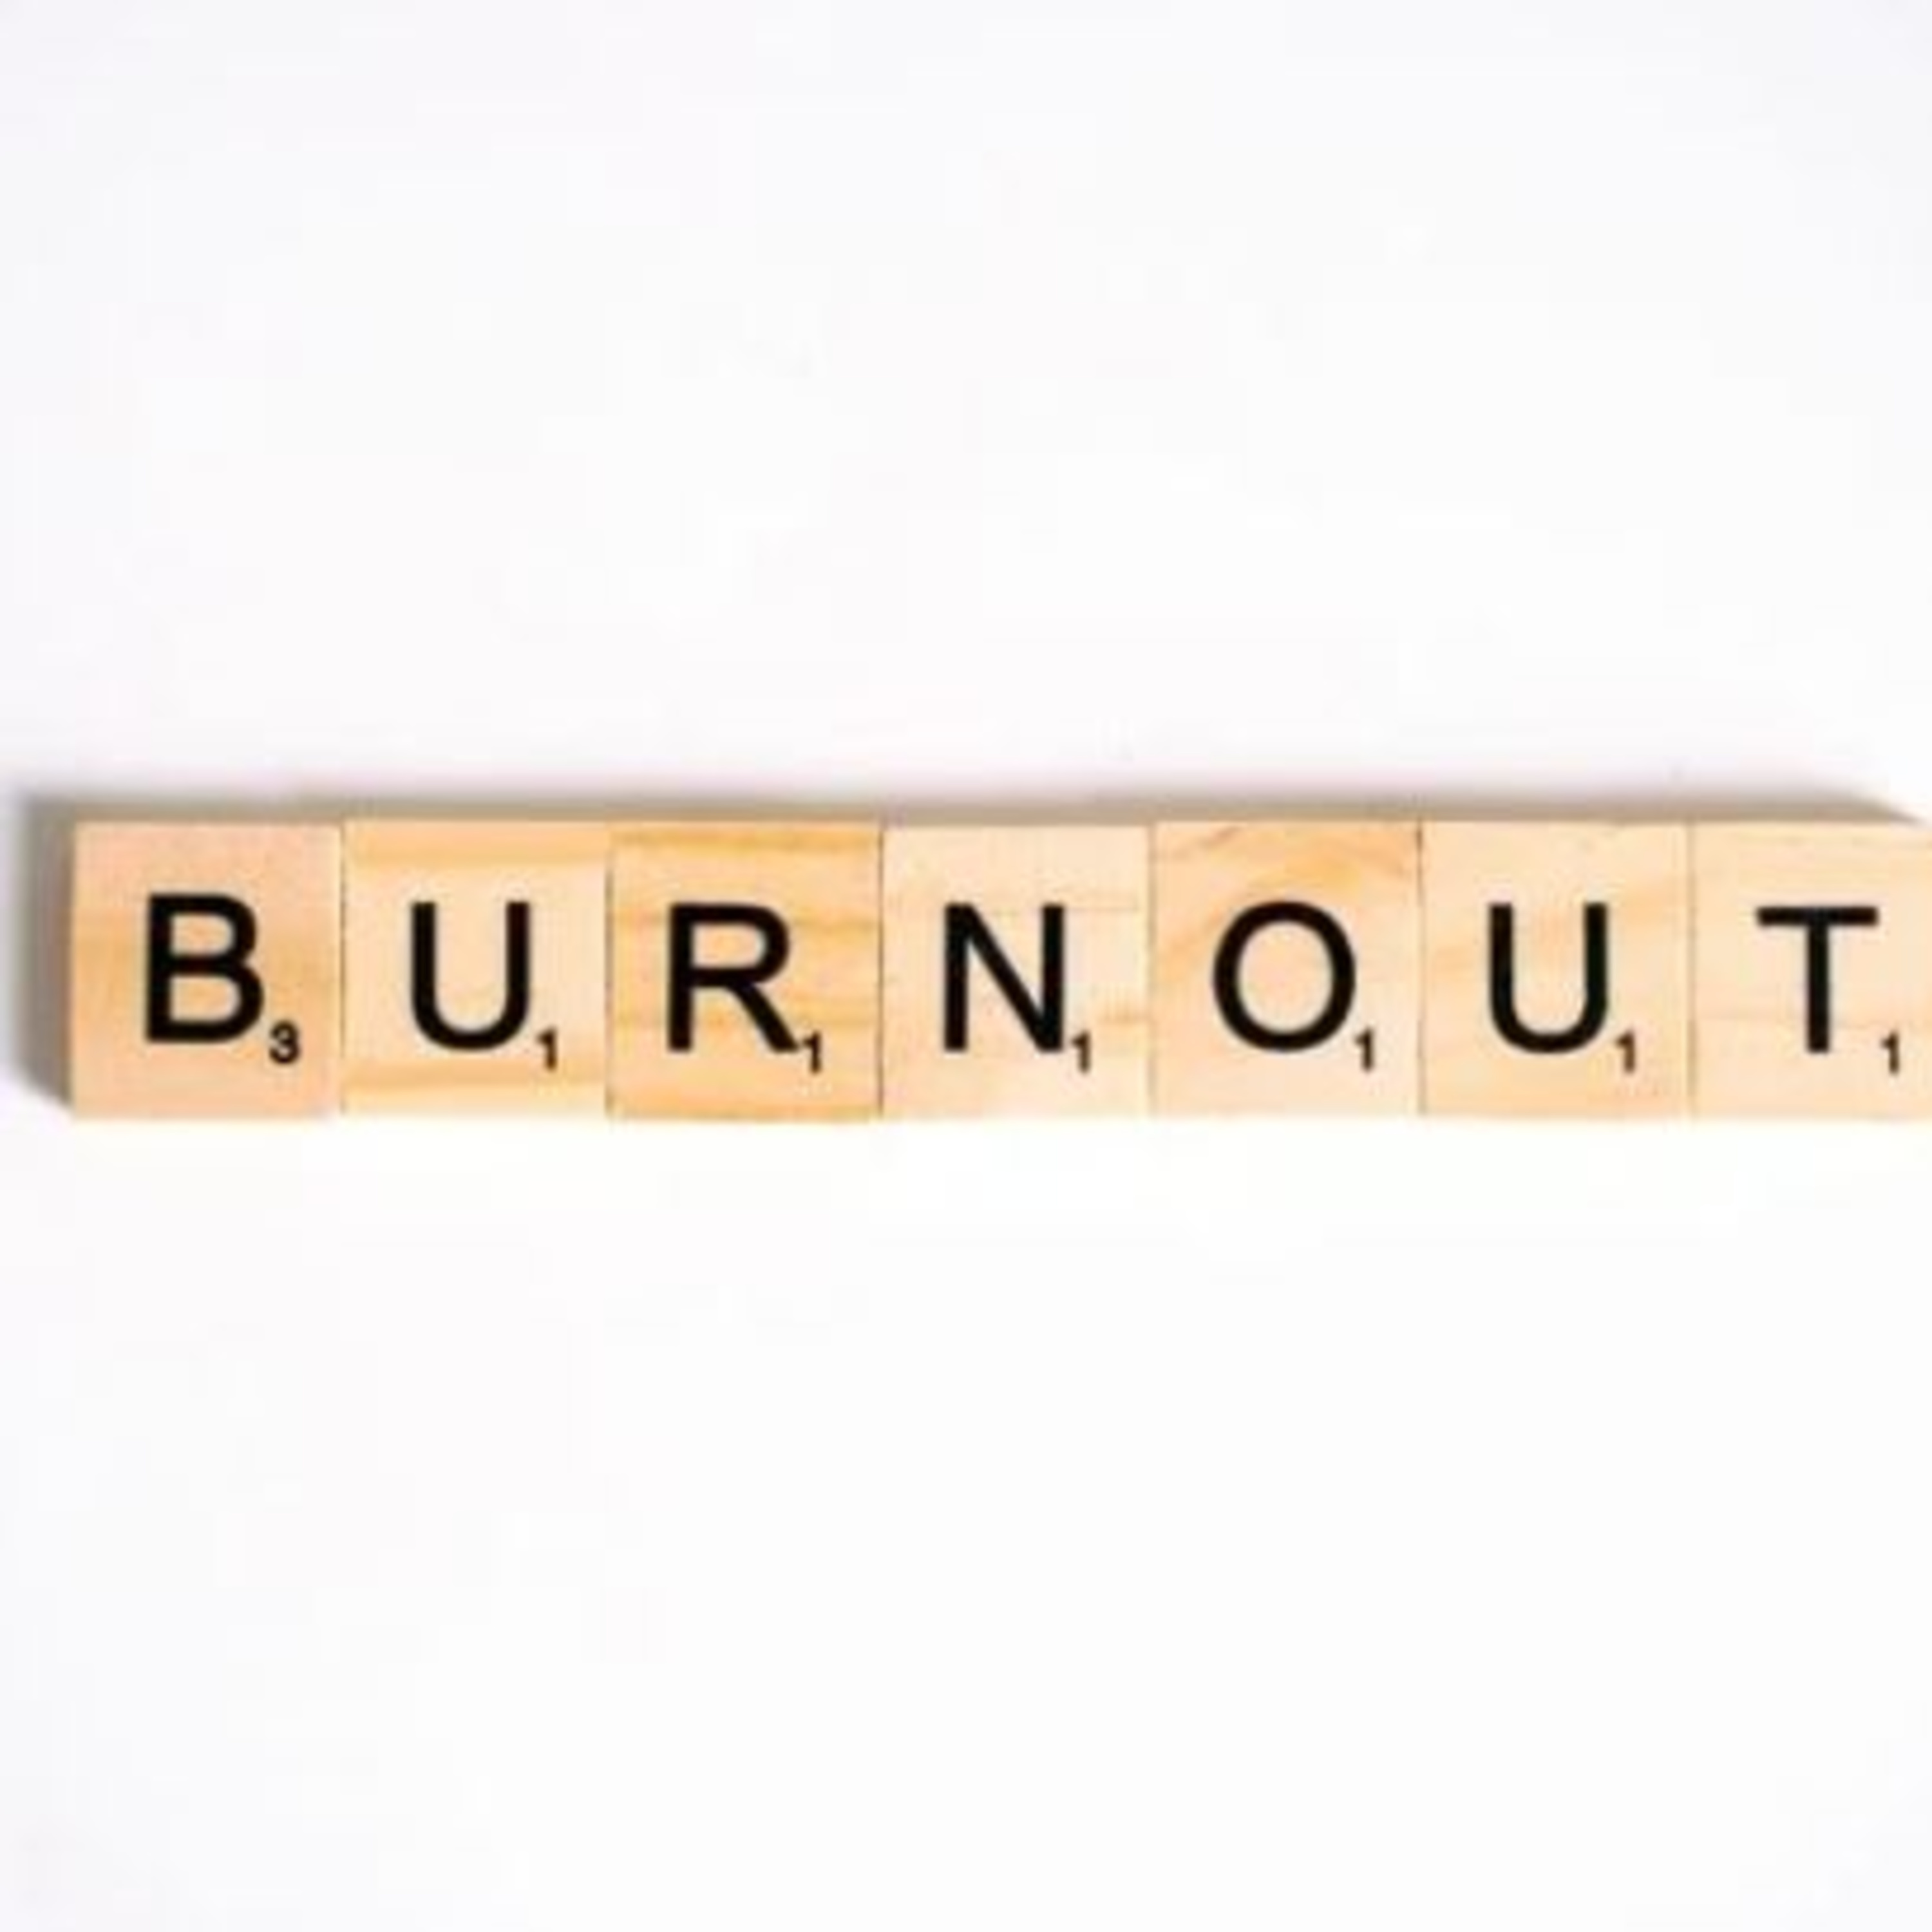 Burnout reconhecida como doença ocupacional; responsabilidades ao empregador